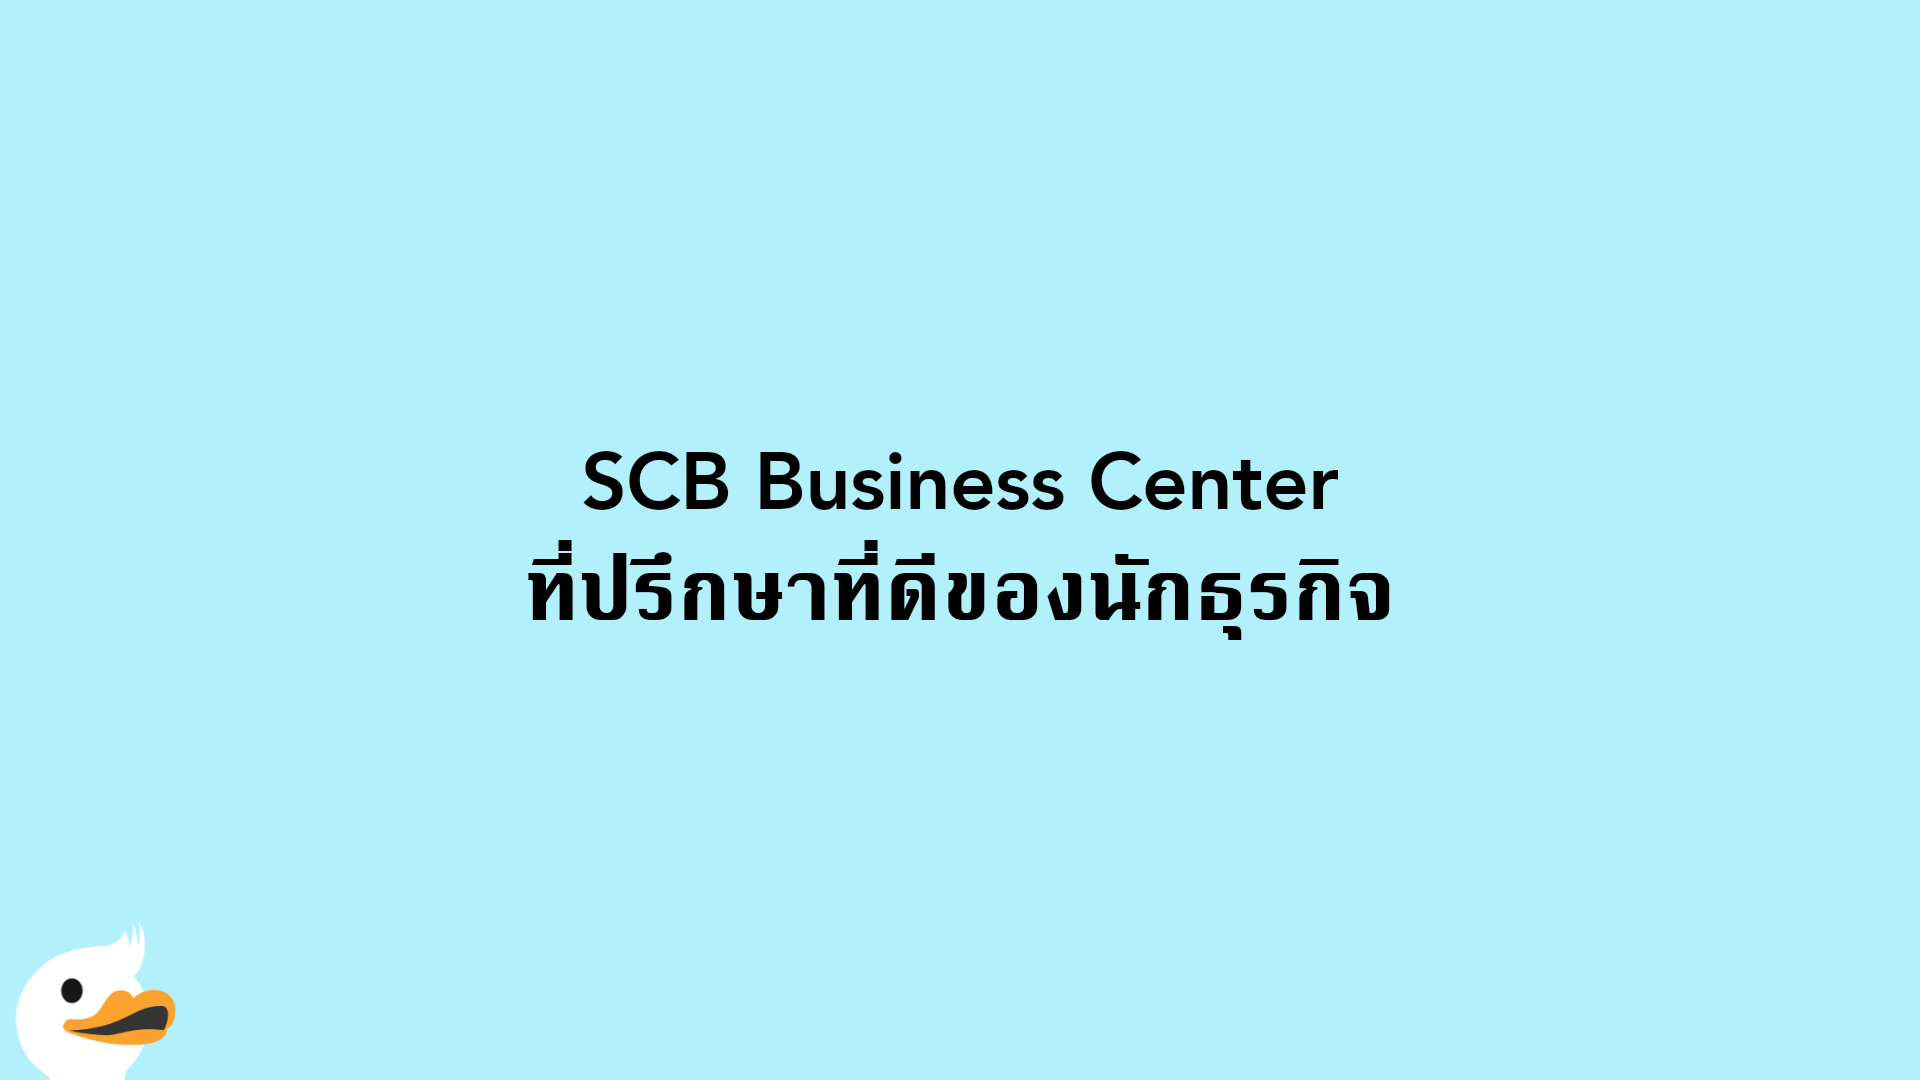 SCB Business Center ที่ปรึกษาที่ดีของนักธุรกิจ